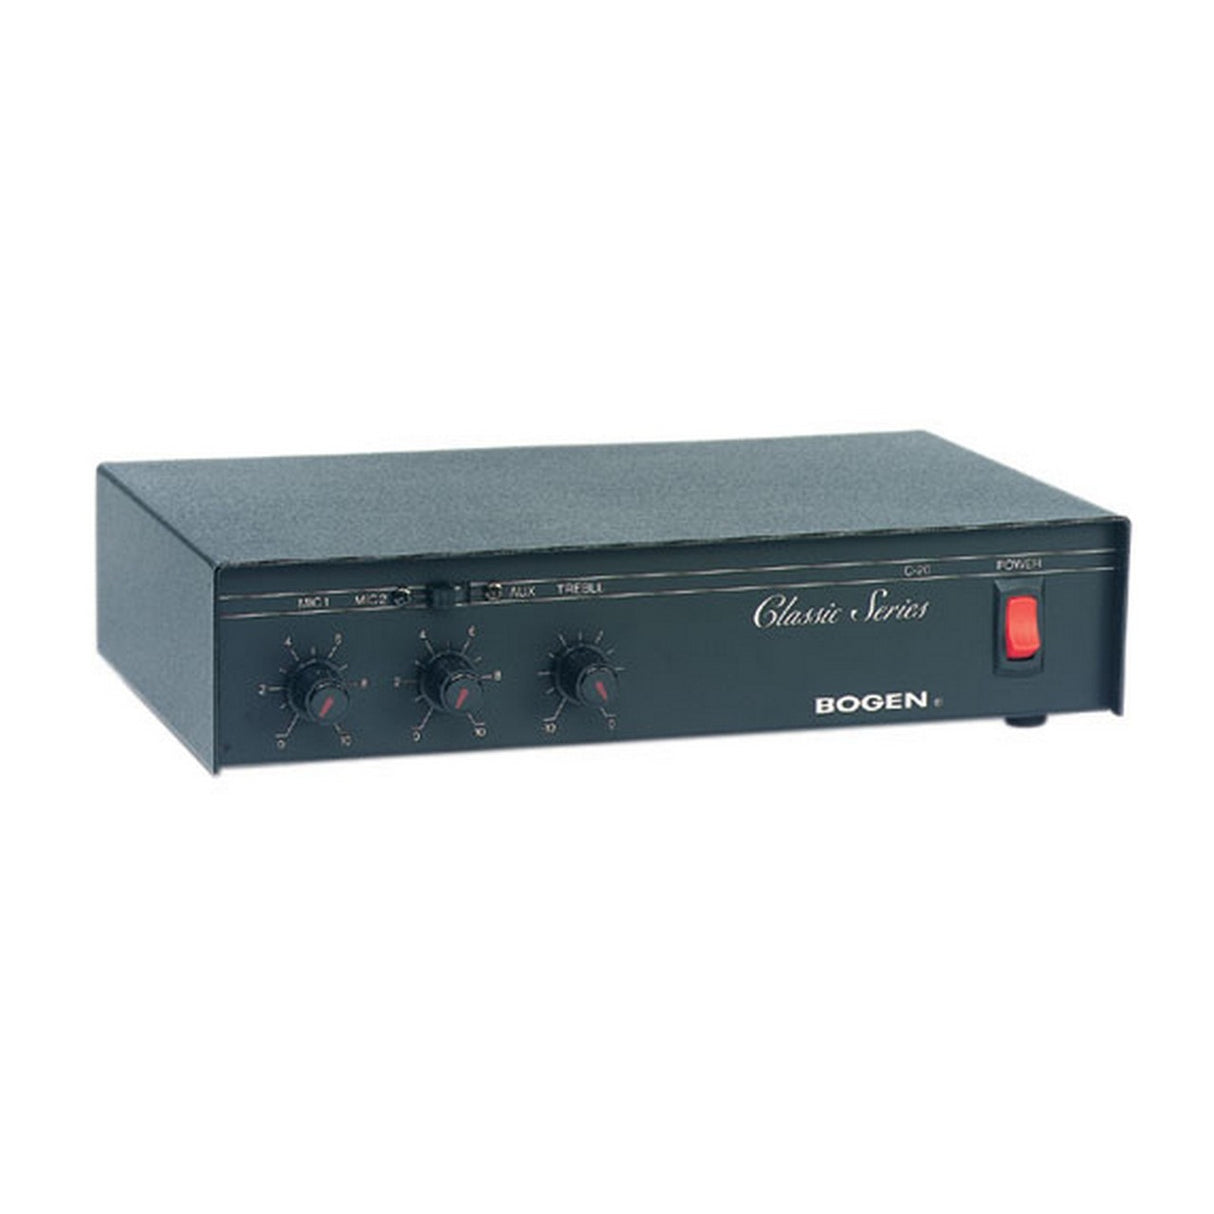 Bogen C20 | 20W AV Receiver and Mixer Amplifier